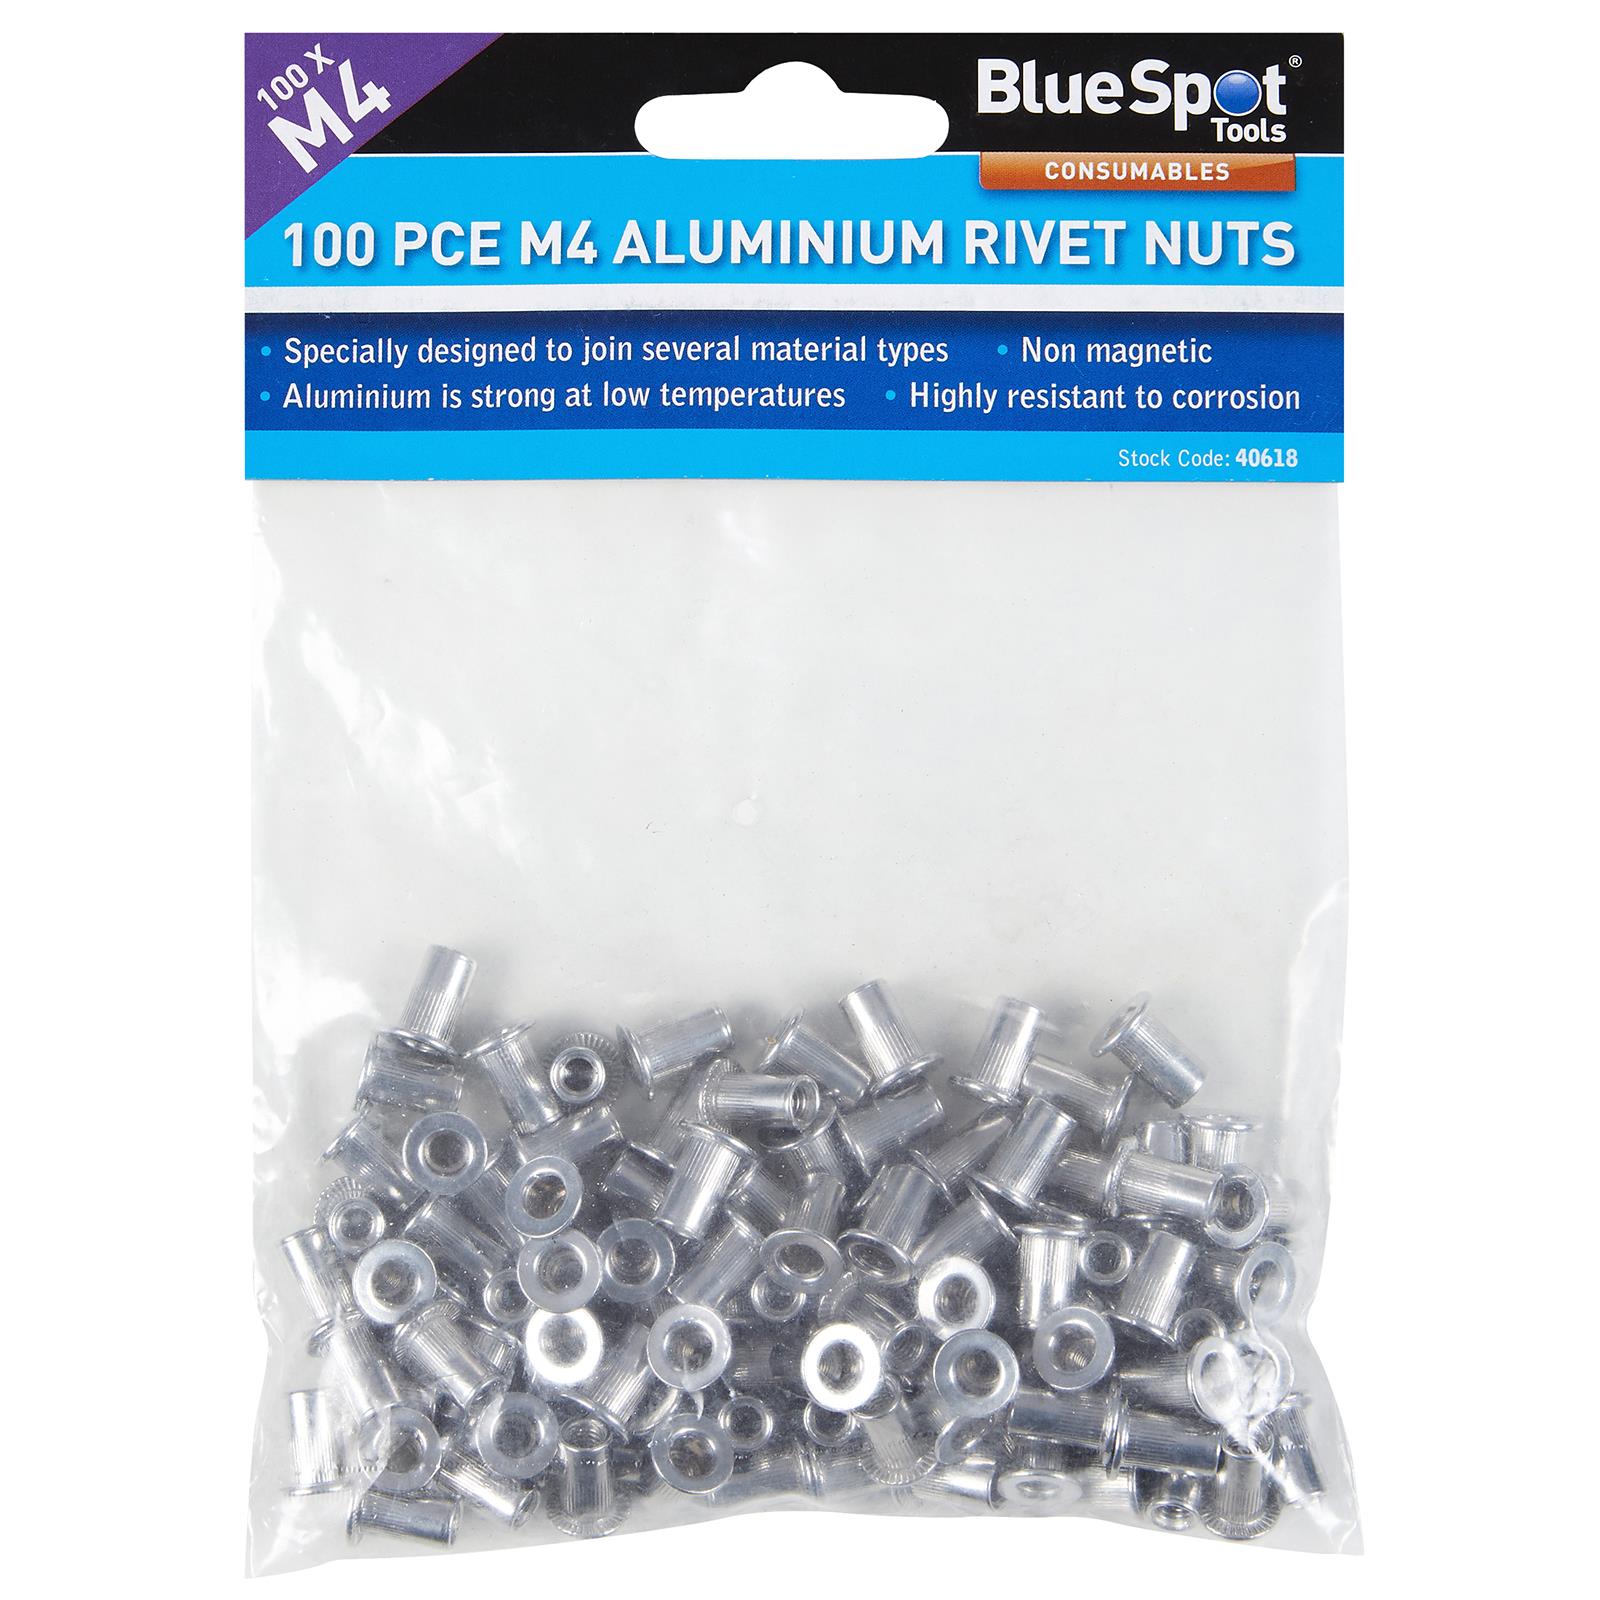 BlueSpot Aluminium Rivet Nuts M4 100 Piece Rivnuts